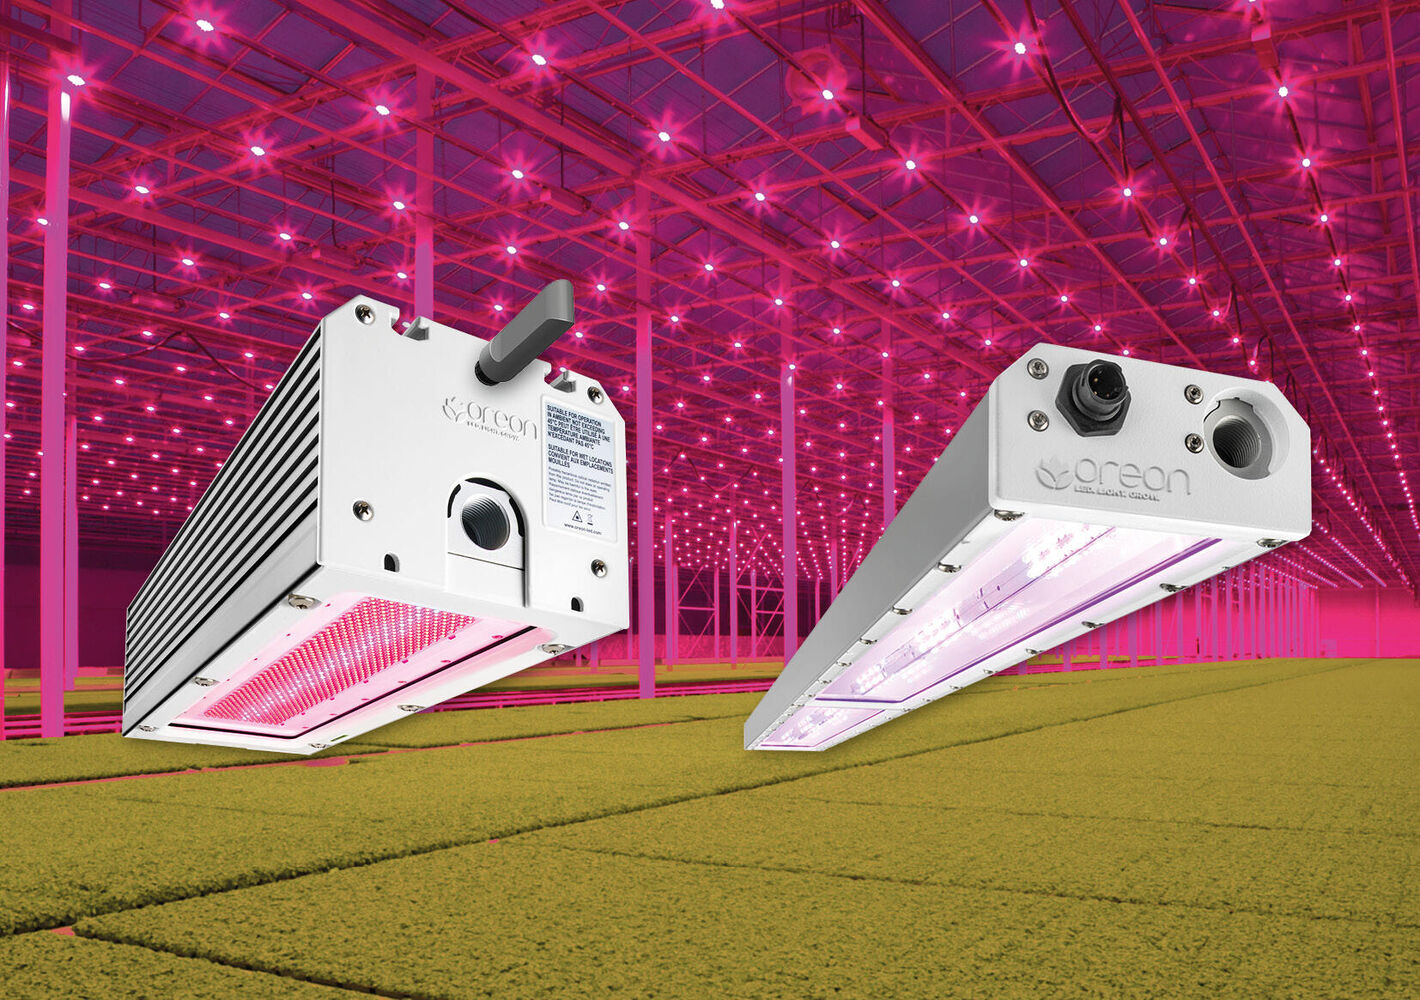 Dimbare en spectrum flexibele LED-armaturen biedt teler maximale controle over belichtingsinstallatie